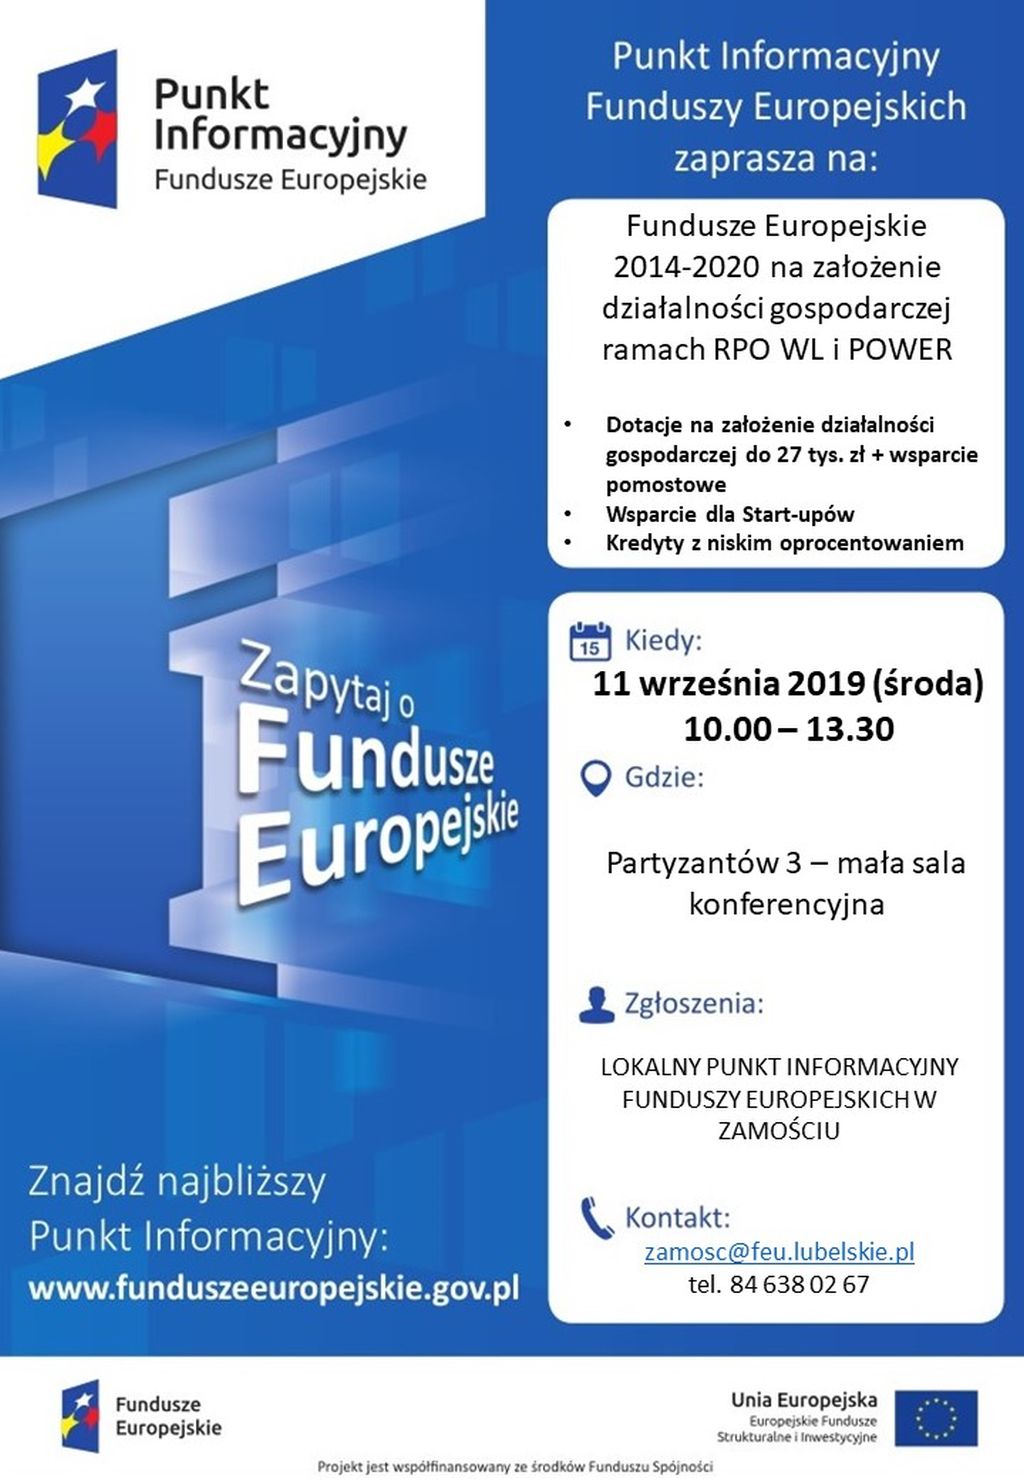 Fundusze Europejskie na założenie działalności gospodarczej, spotkanie w Zamościu